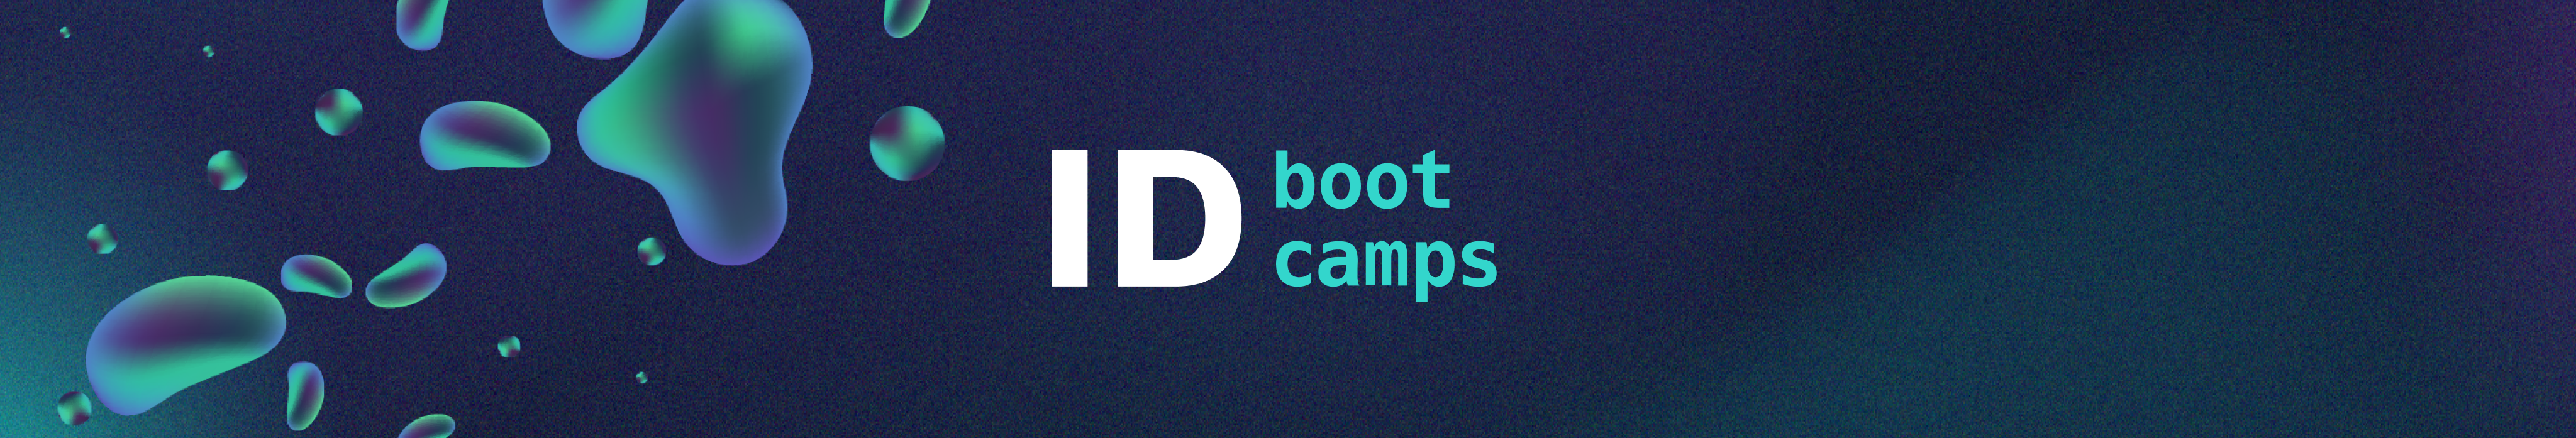 La escuela especializada en bootcamps - ID Bootcamps